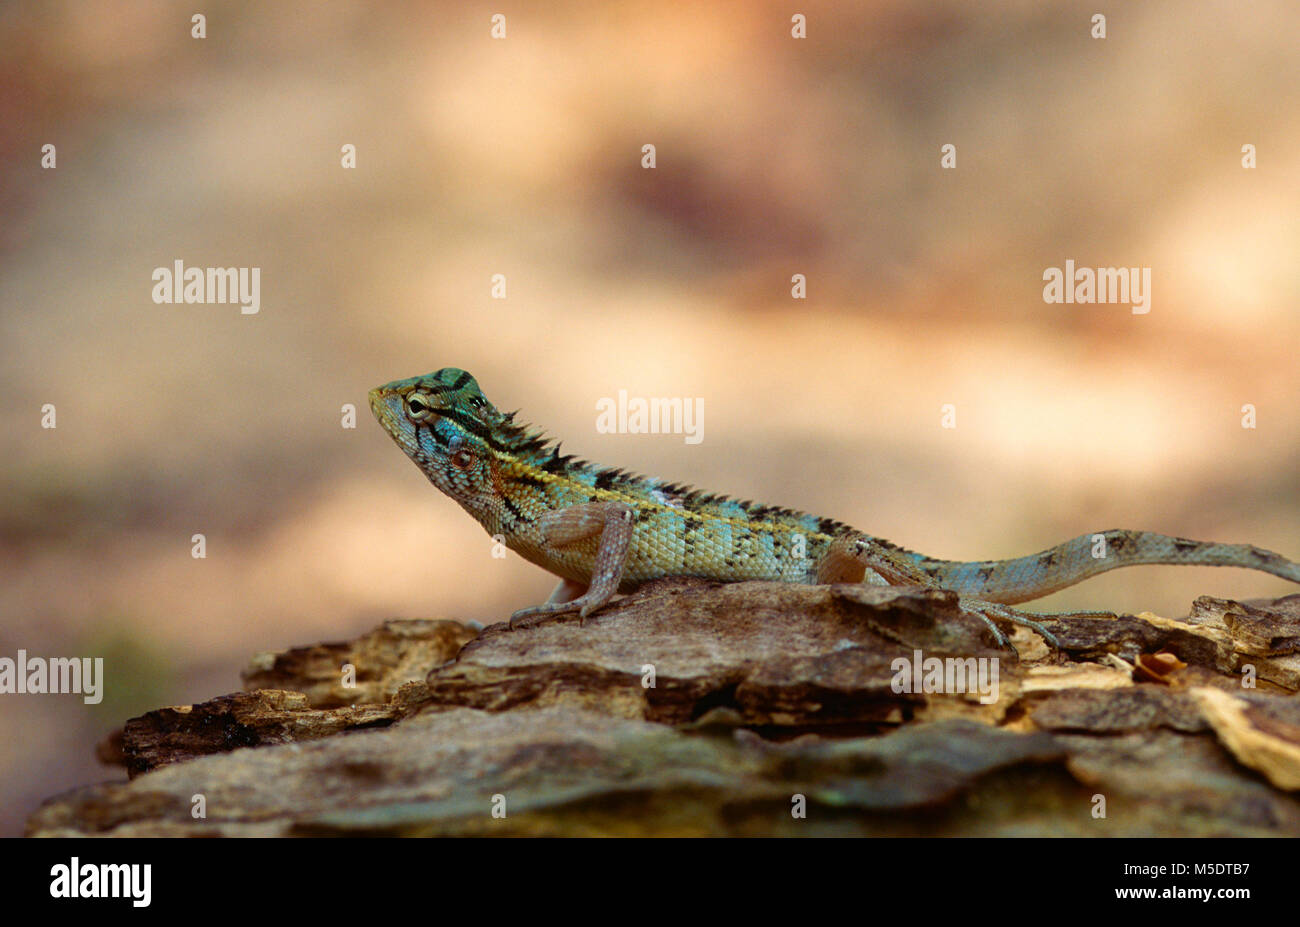 Wiegmann's-Agama, Otocryptis wiegmanni, Agamidae, Lizard, reptile, animal, Sri Lanka Stock Photo